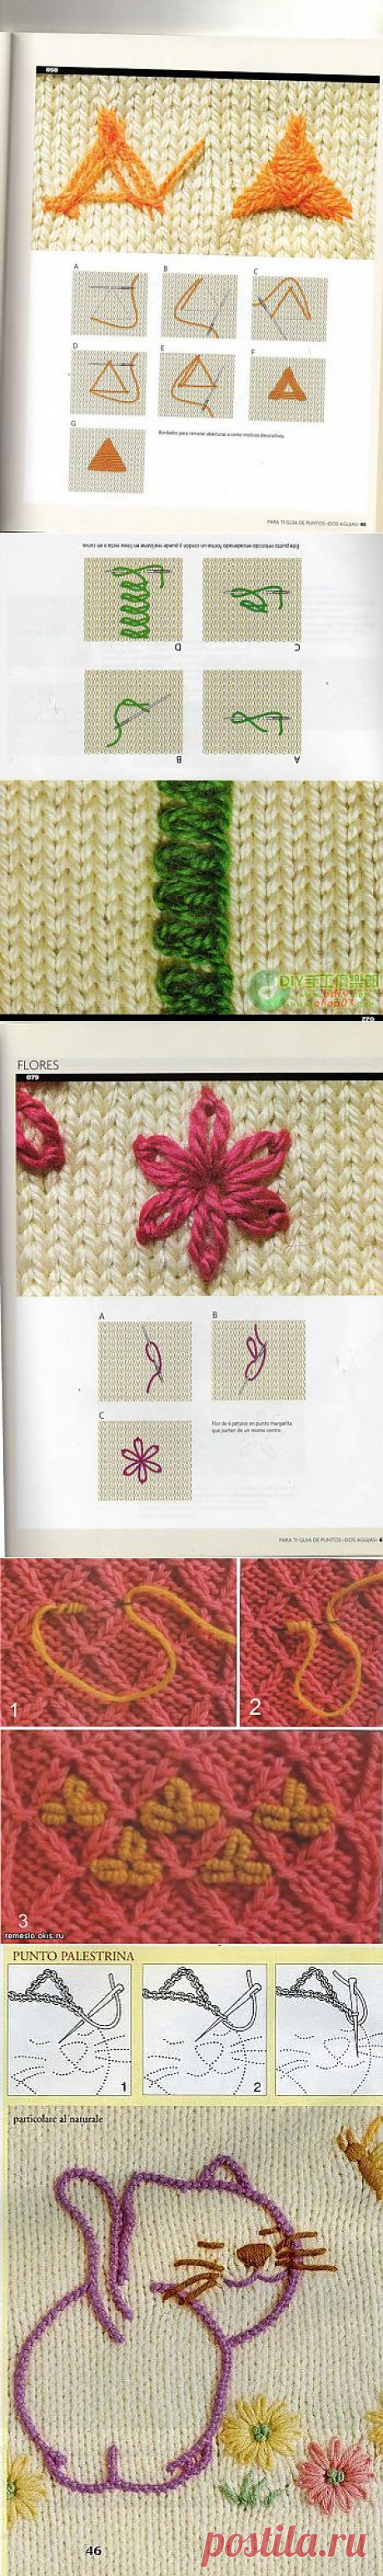 Вышивание по вязаному | Для дома для семьи